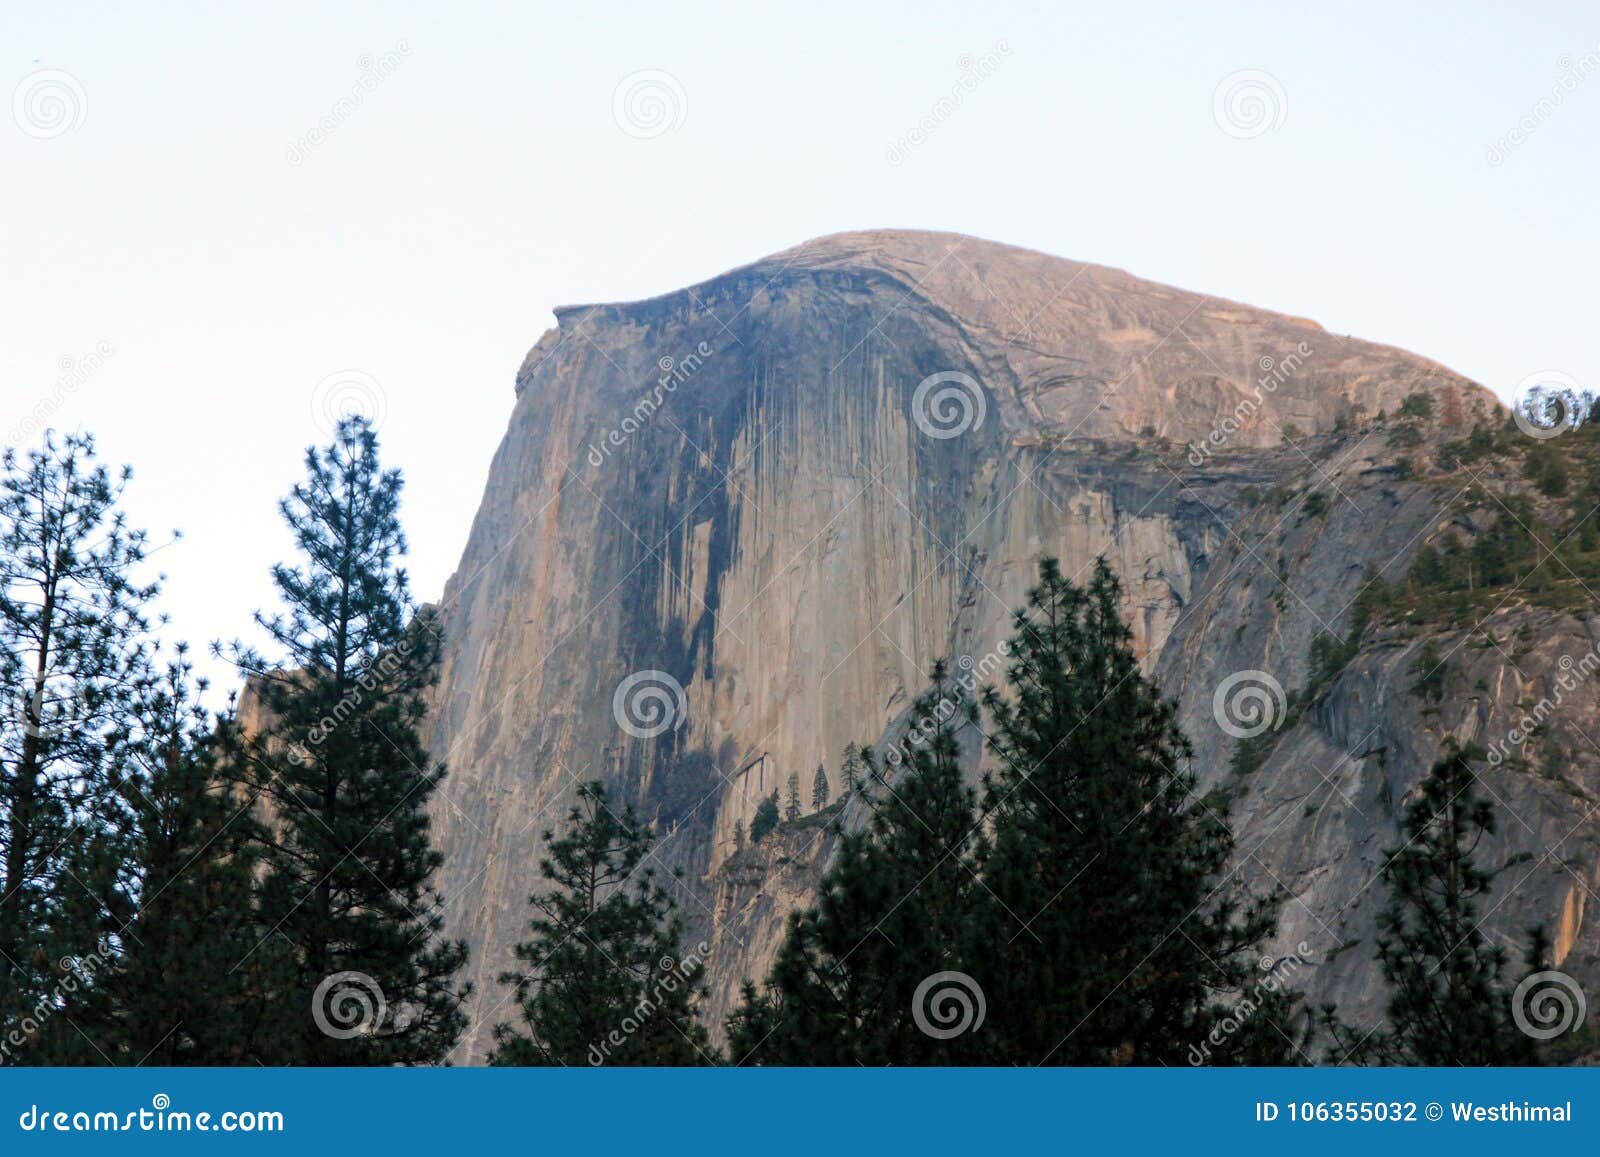 Μισός θόλος, εθνικό πάρκο Yosemite, άποψη Καλιφόρνιας από το χωριό κάρρυ. Μισός θόλος, εθνικό πάρκο Yosemite, Καλιφόρνια, που βλέπει από χώρο στάθμευσης του χωριού το μισό θόλων κάρρυ, θολωτός βράχος γρανίτη με το κάθετα κομμένο μέτωπο αυξανόμενα 1444 μ επάνω από το πάτωμα κοιλάδων